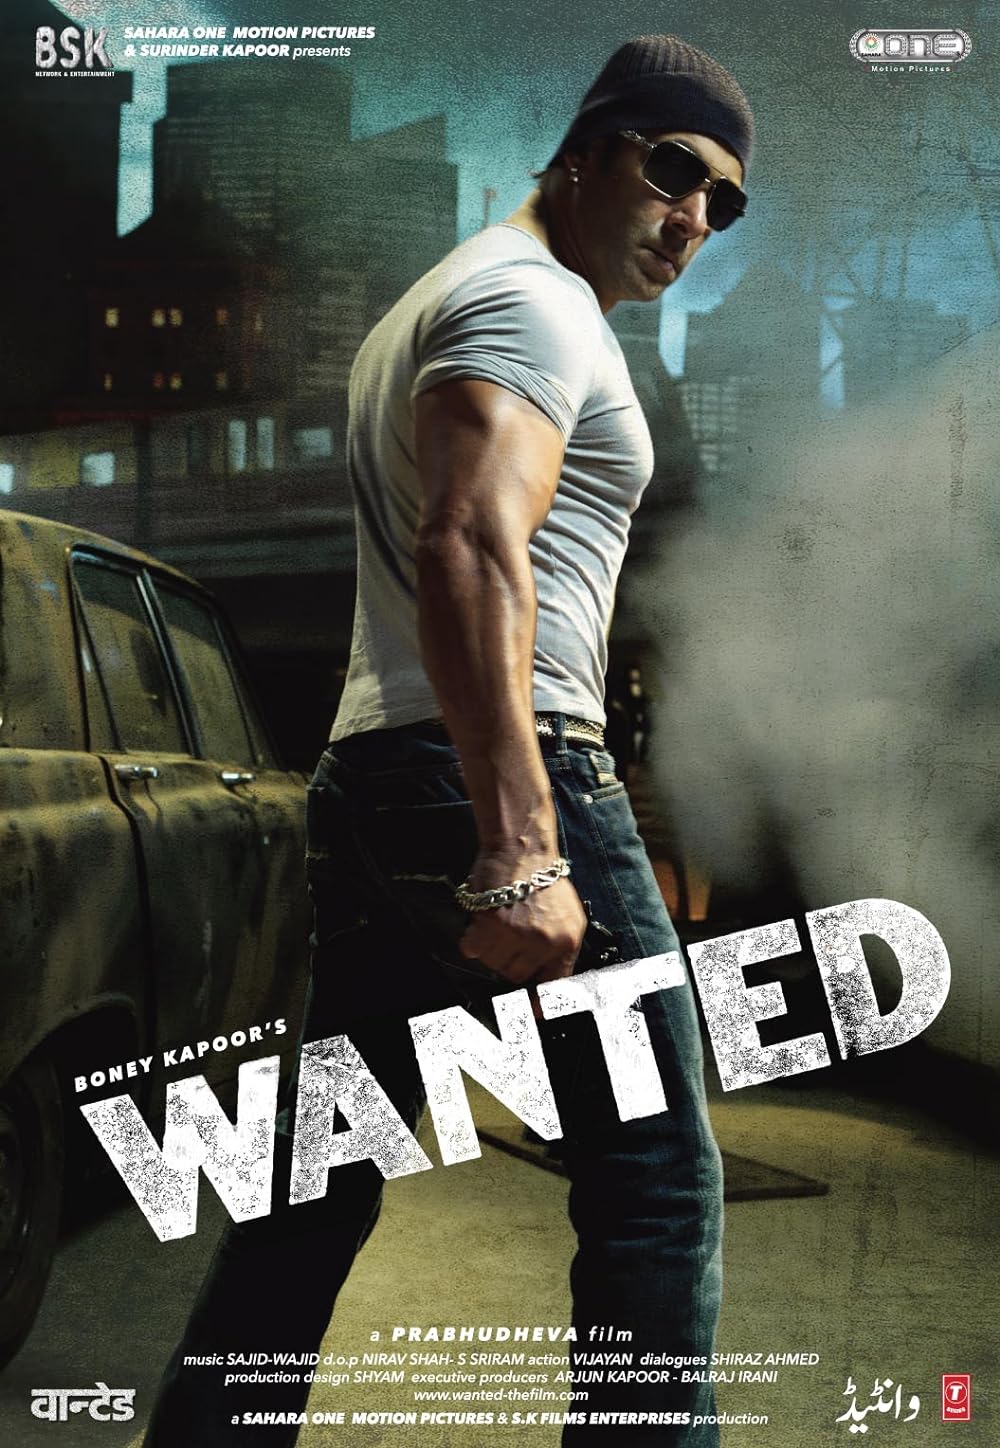 assets/img/movie/Wanted 2009 Hindi Full Movie.jpg 9xmovies